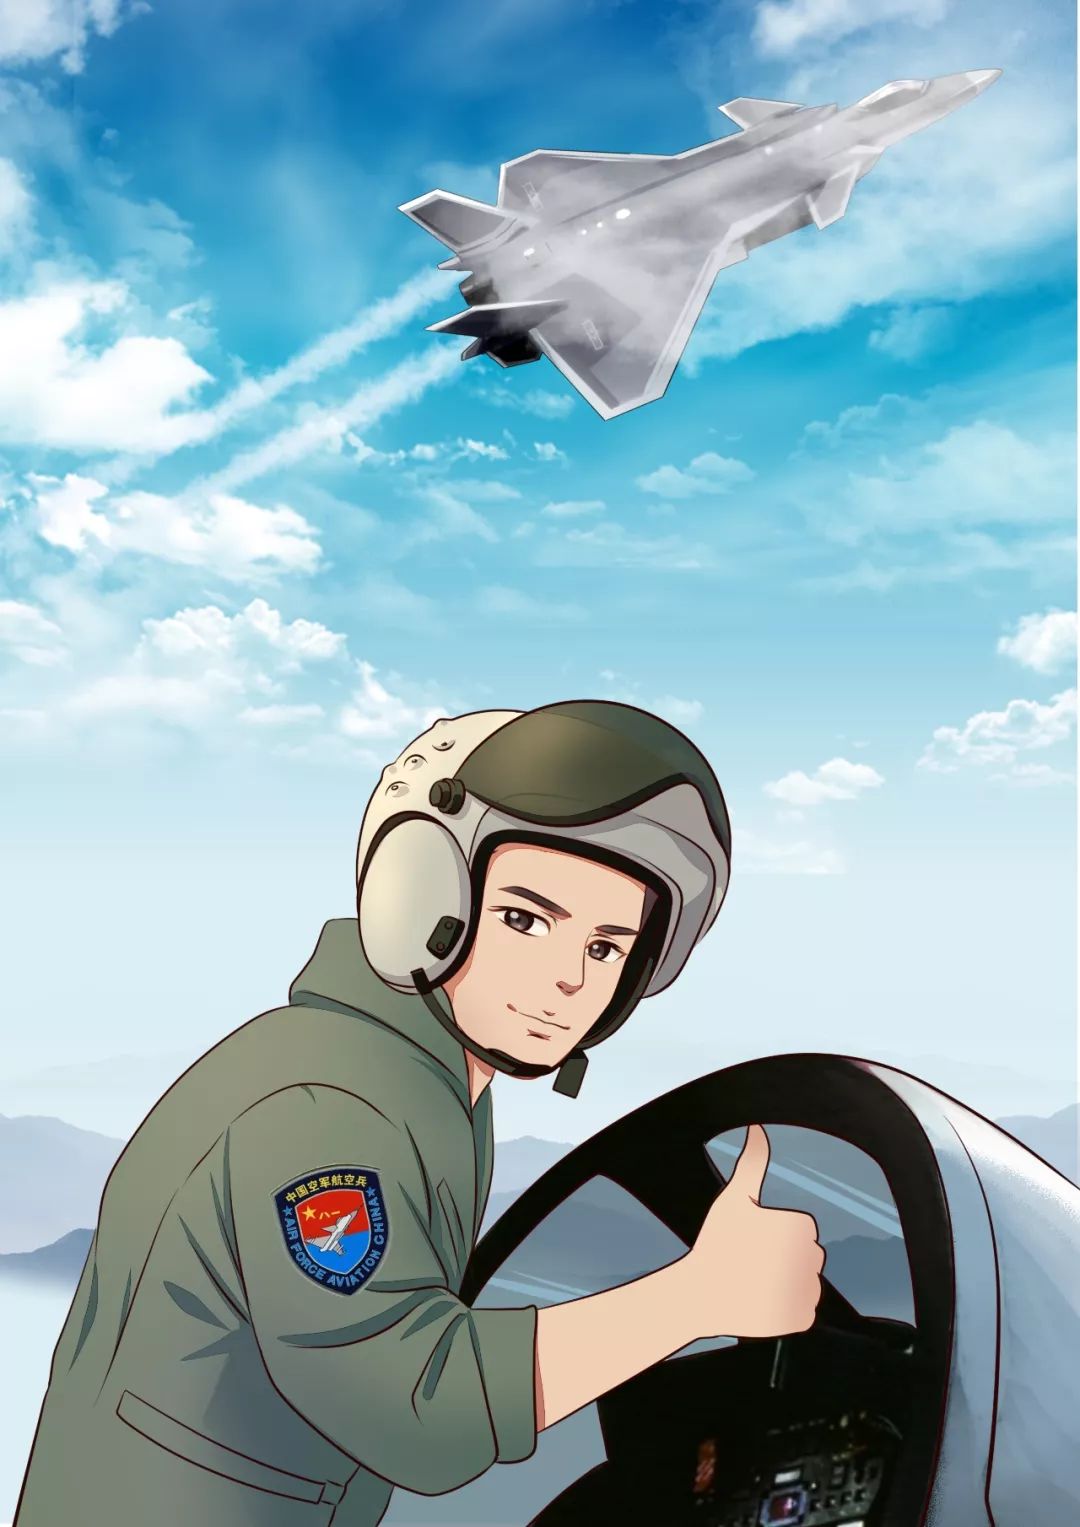 空军卡通绘画图片